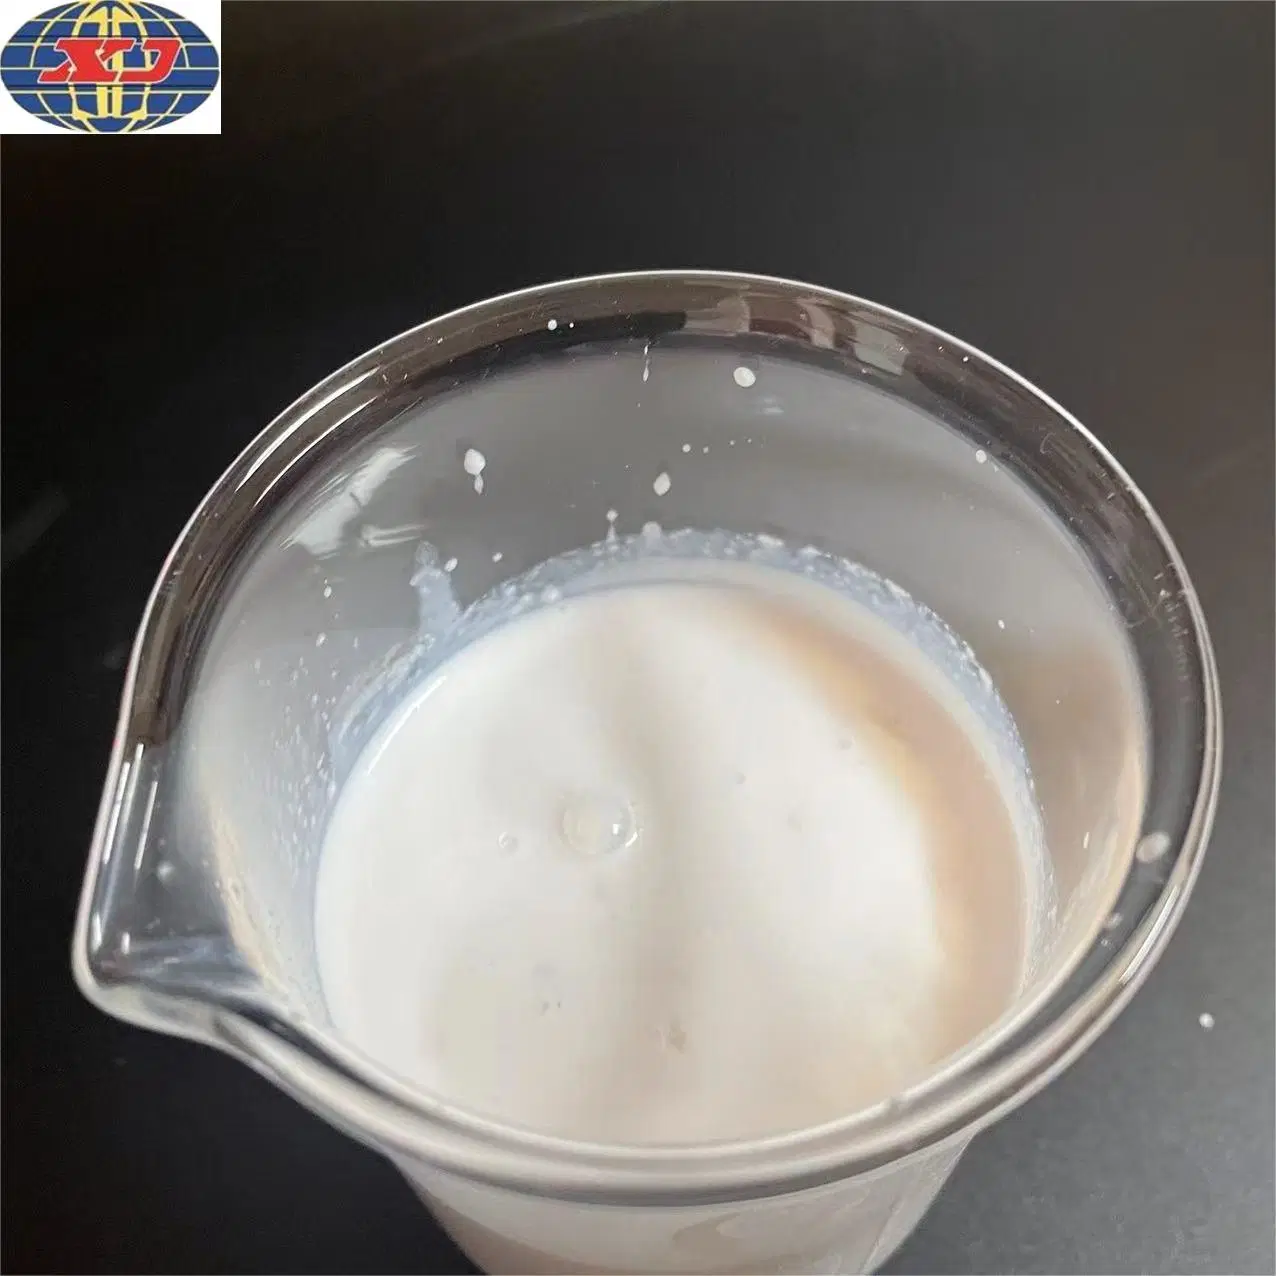 Bloco auxiliar químico silicone Softener emulsão de óleo de silicone CAS 63148-62-9 Emulsão para borracha